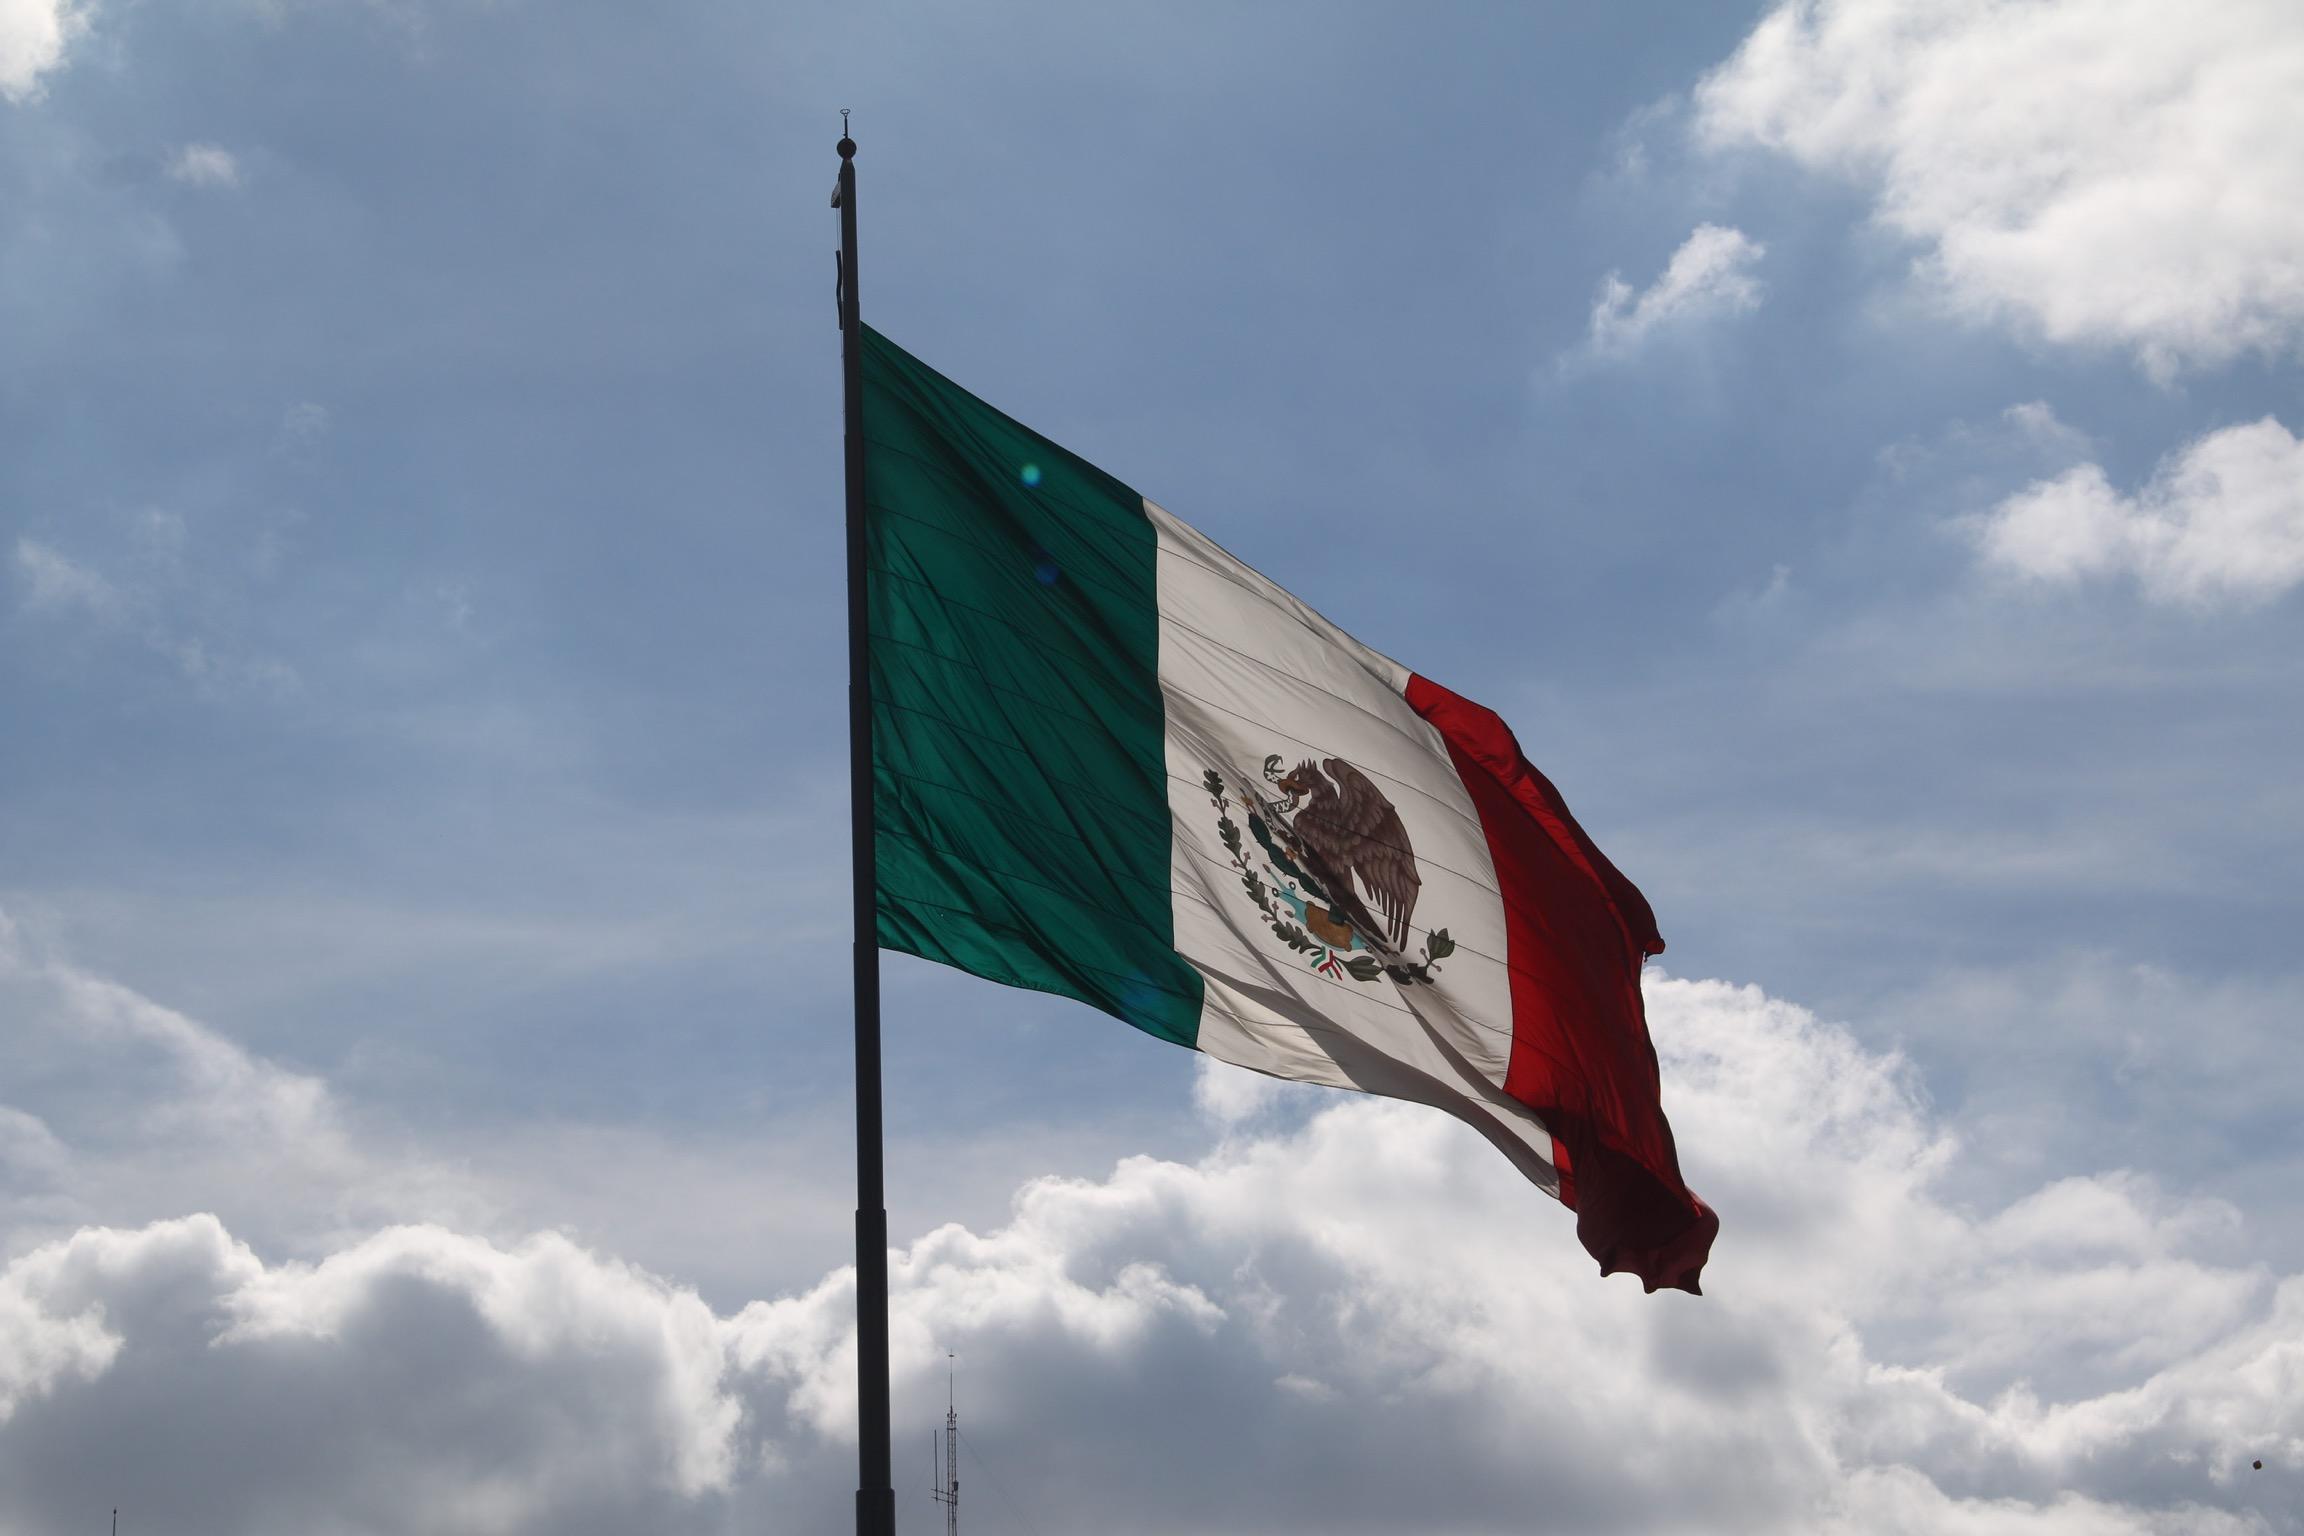 Falso que migrantes hondureños quemaron bandera mexicana; la imagen ocurrió en 2014 por protestas de la CNTE en Oaxaca